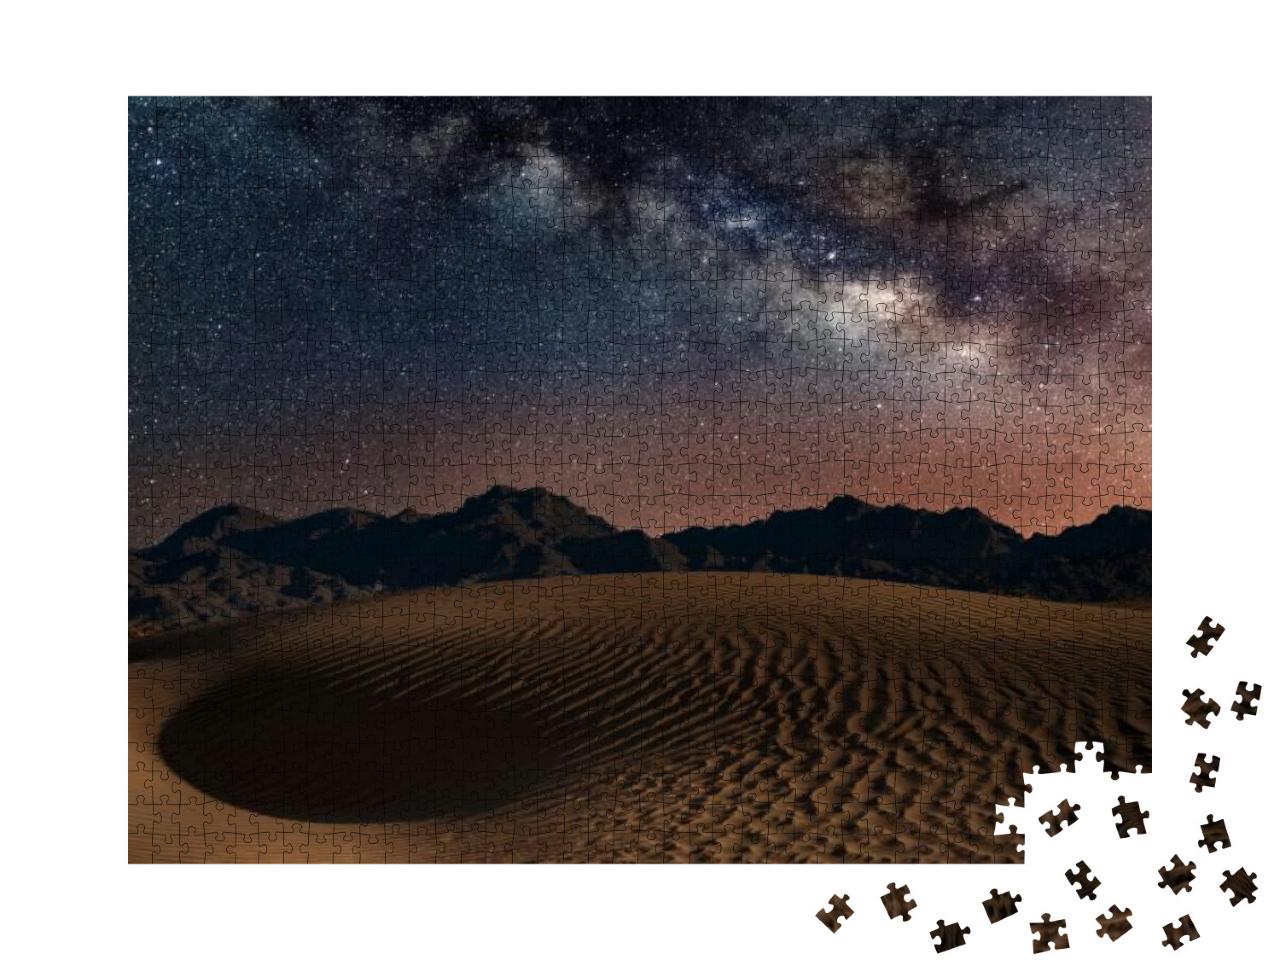 Galaxy Milky Way Al-Ula- Saudi Arabia... Jigsaw Puzzle with 1000 pieces